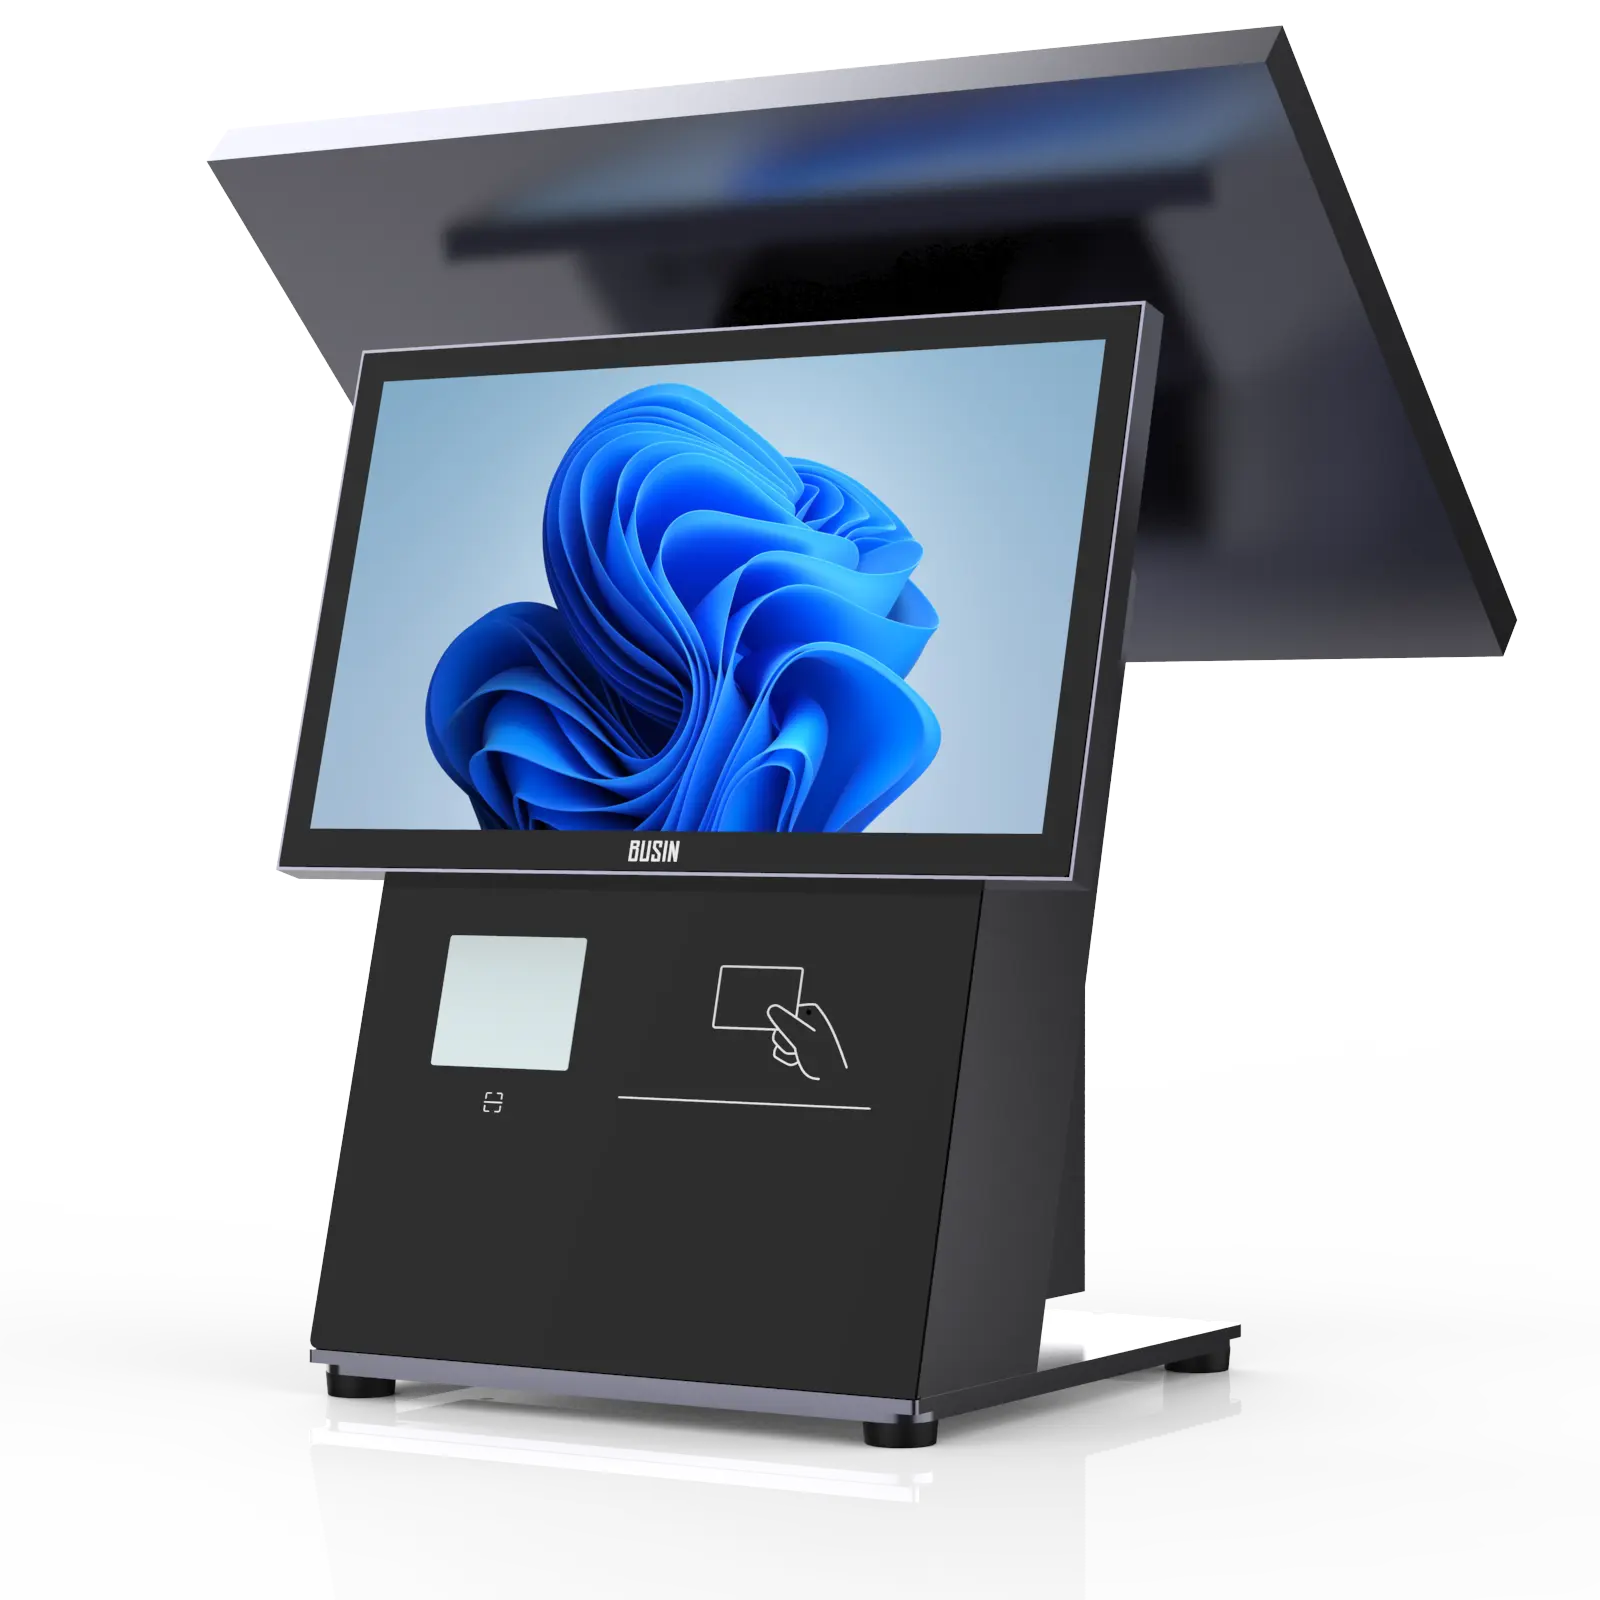 غير القابل للصدأ الكل في واحد آلة نقاط البيع pos نظام صراف سوبر ماركت آلة مع المدمج في الطابعة